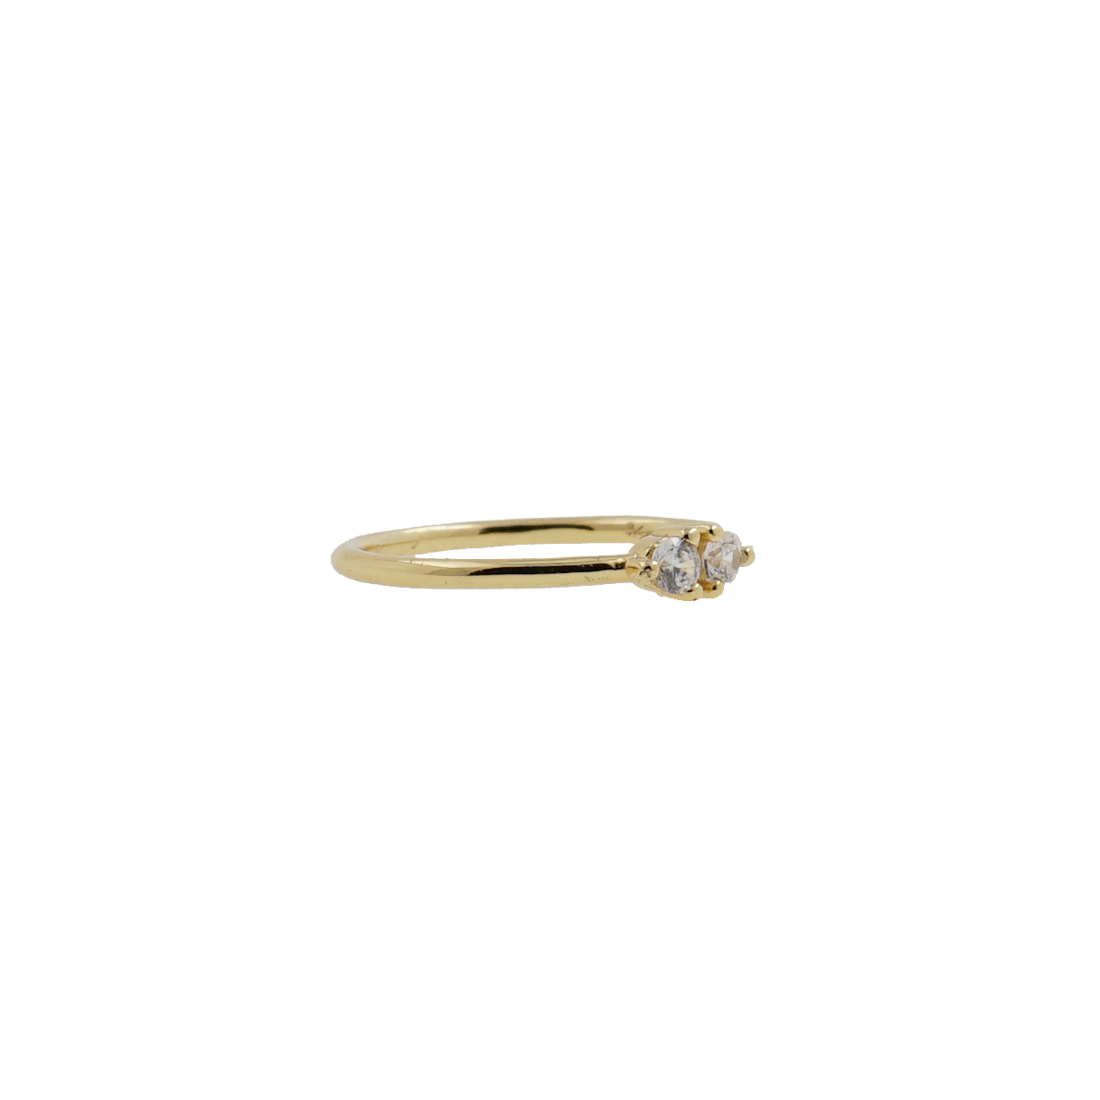 El anillo Maui reúne dos piedras blancas en talla redonda y está realizado en plata de 1ª Ley 925 milésimas acabado con un baño de Oro de 18 Kts. un discreto detalle de buen gusto.